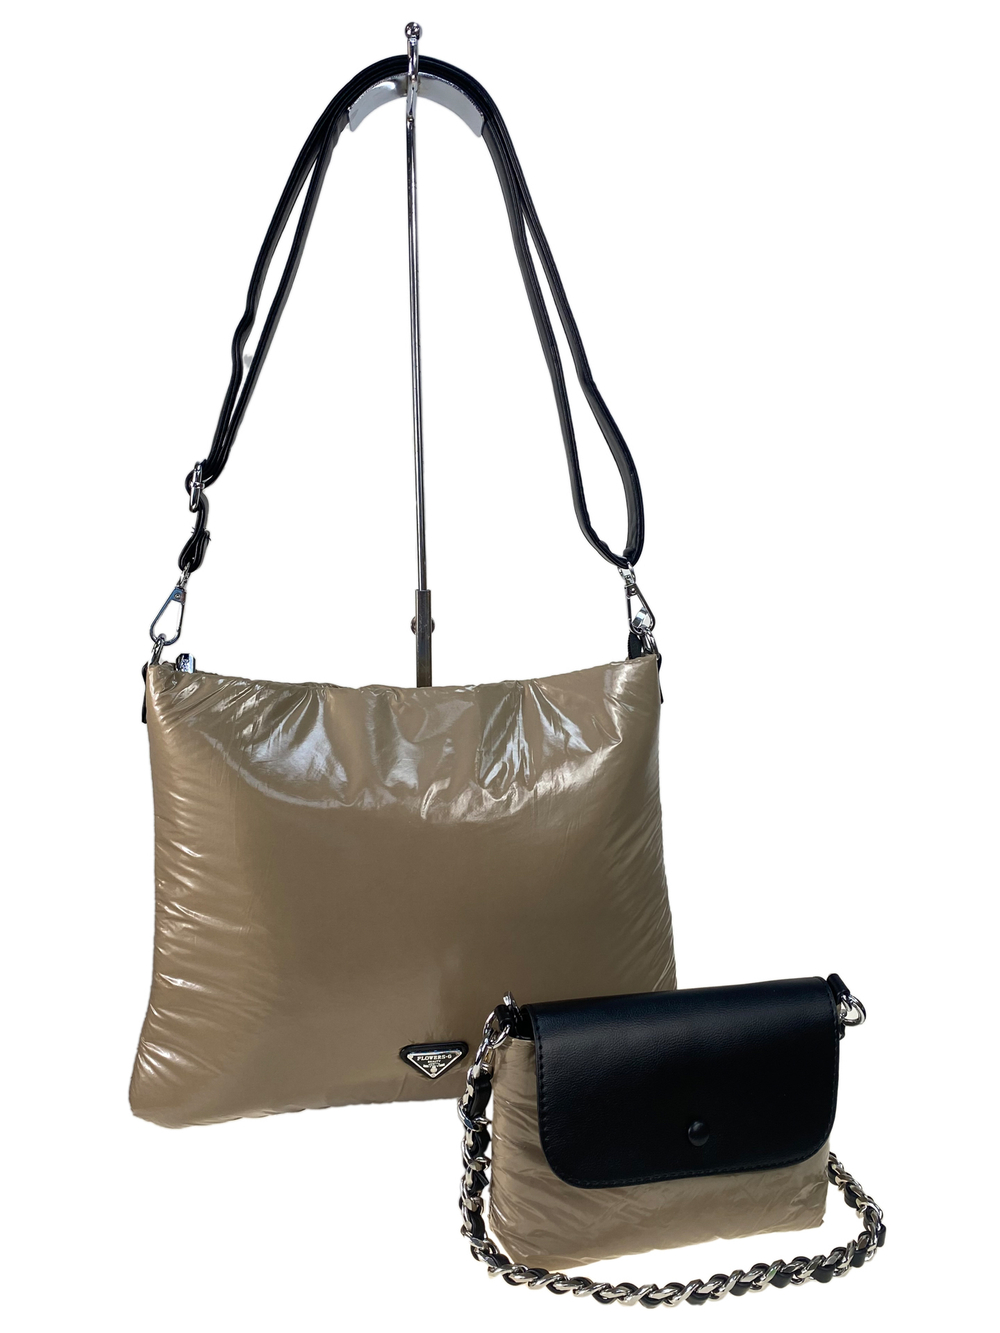 Cтильная женская сумка-шоппер из водоотталкивающей ткани, цвет хаки